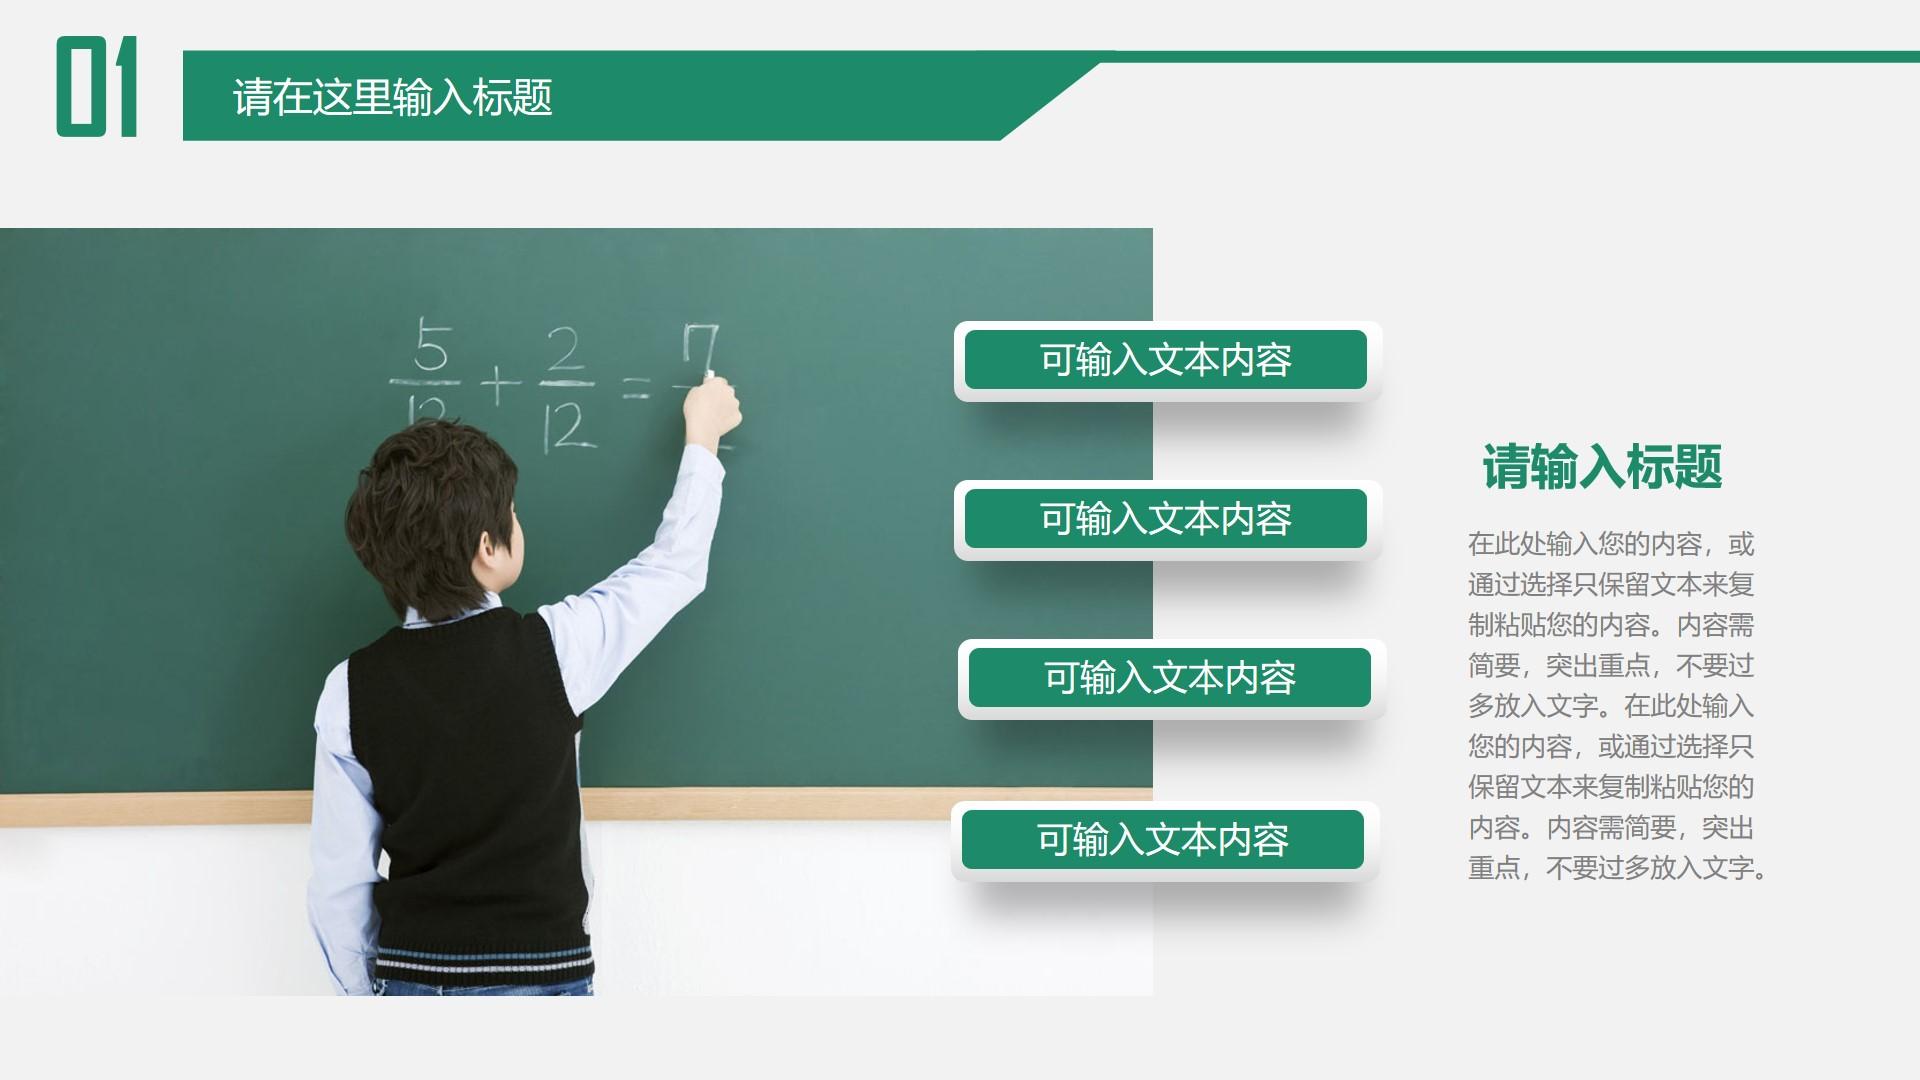 教育教学黑色绿色白色实景卡通重点云素材PPT模板1672670156011